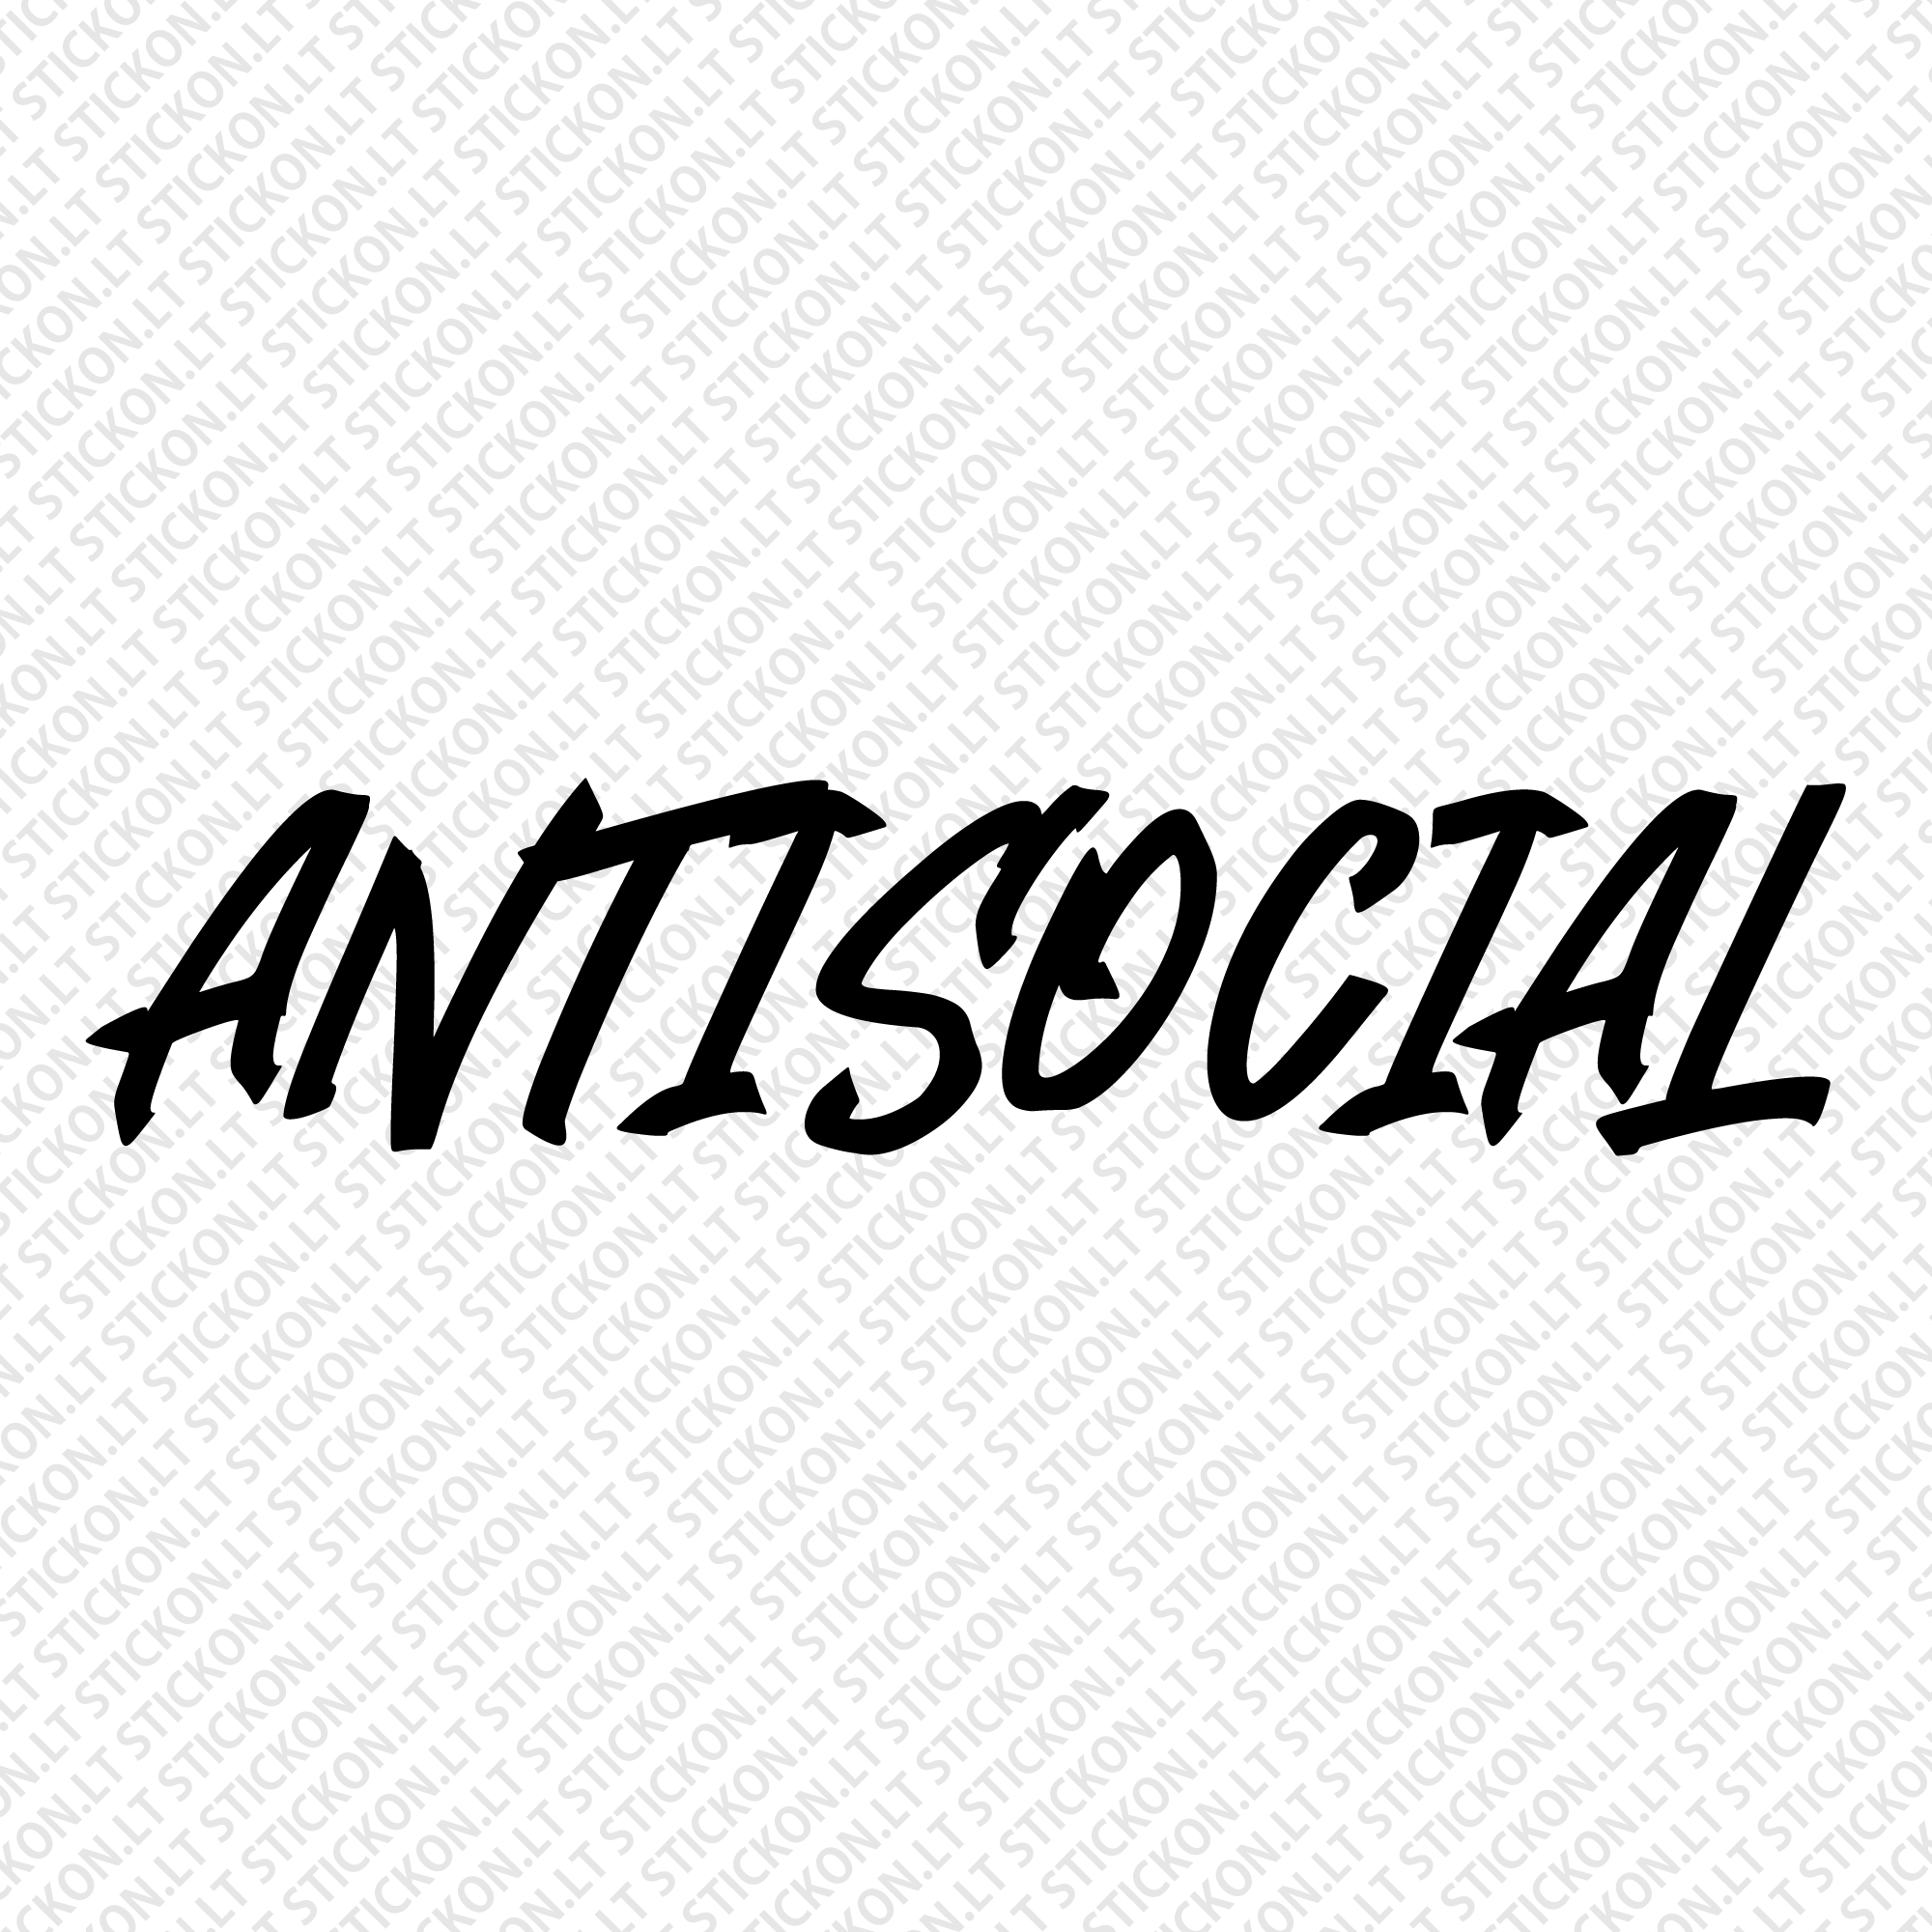 "Antisocial v2"